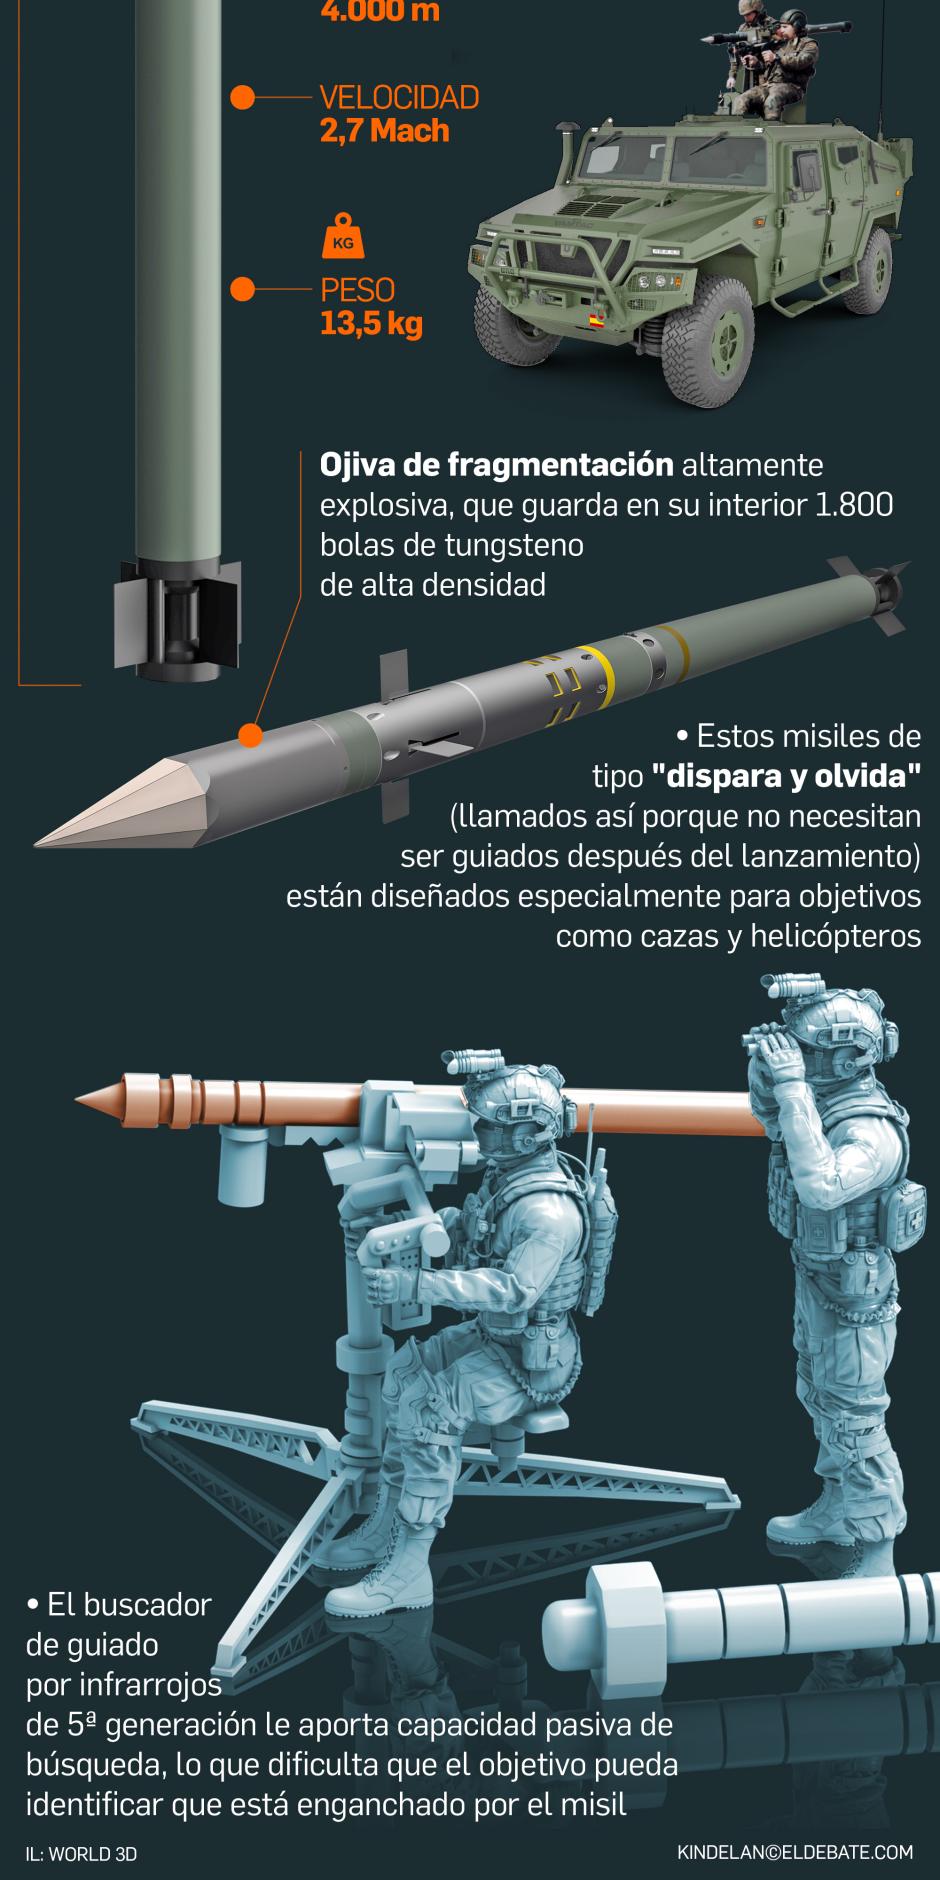 Así es el misil Mistral III